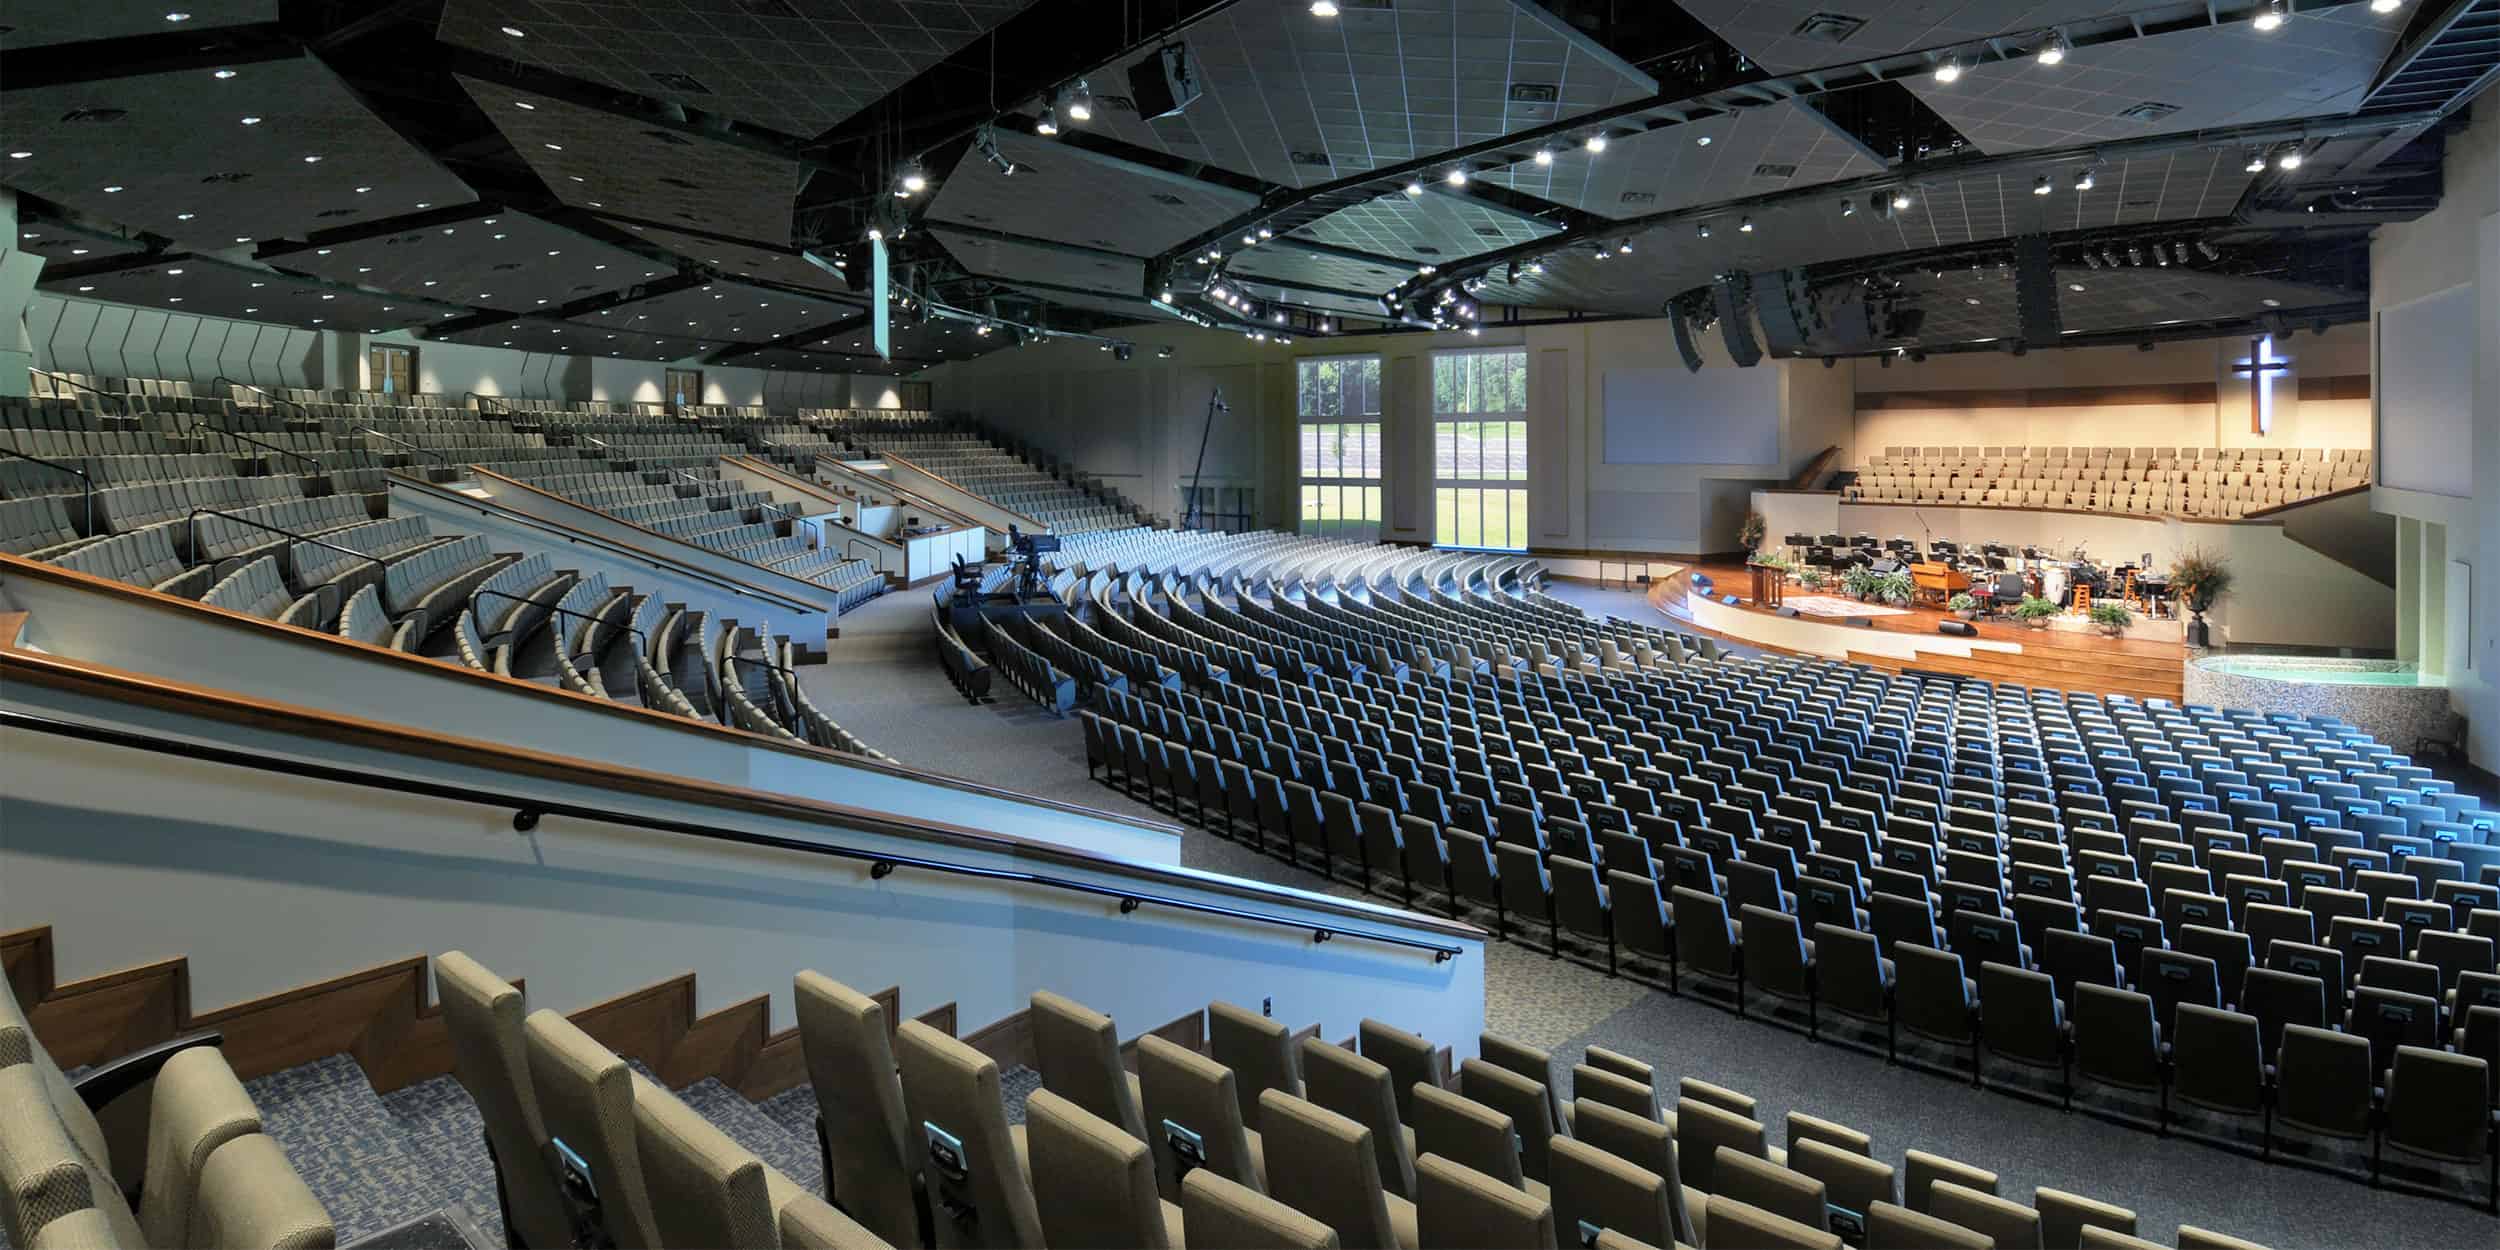 Interior of church with auditorium seating